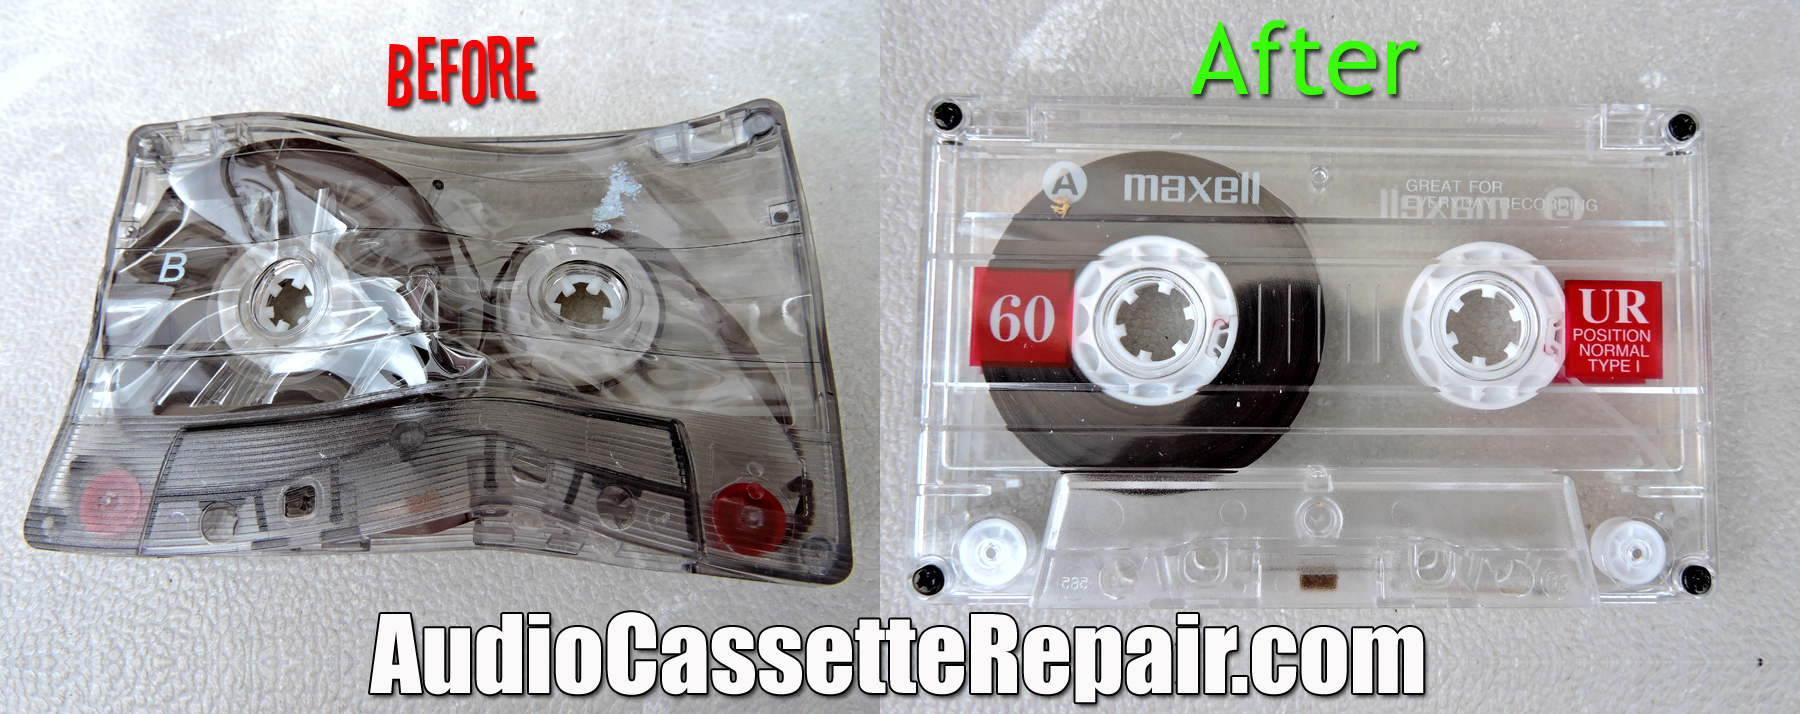 repair cassette